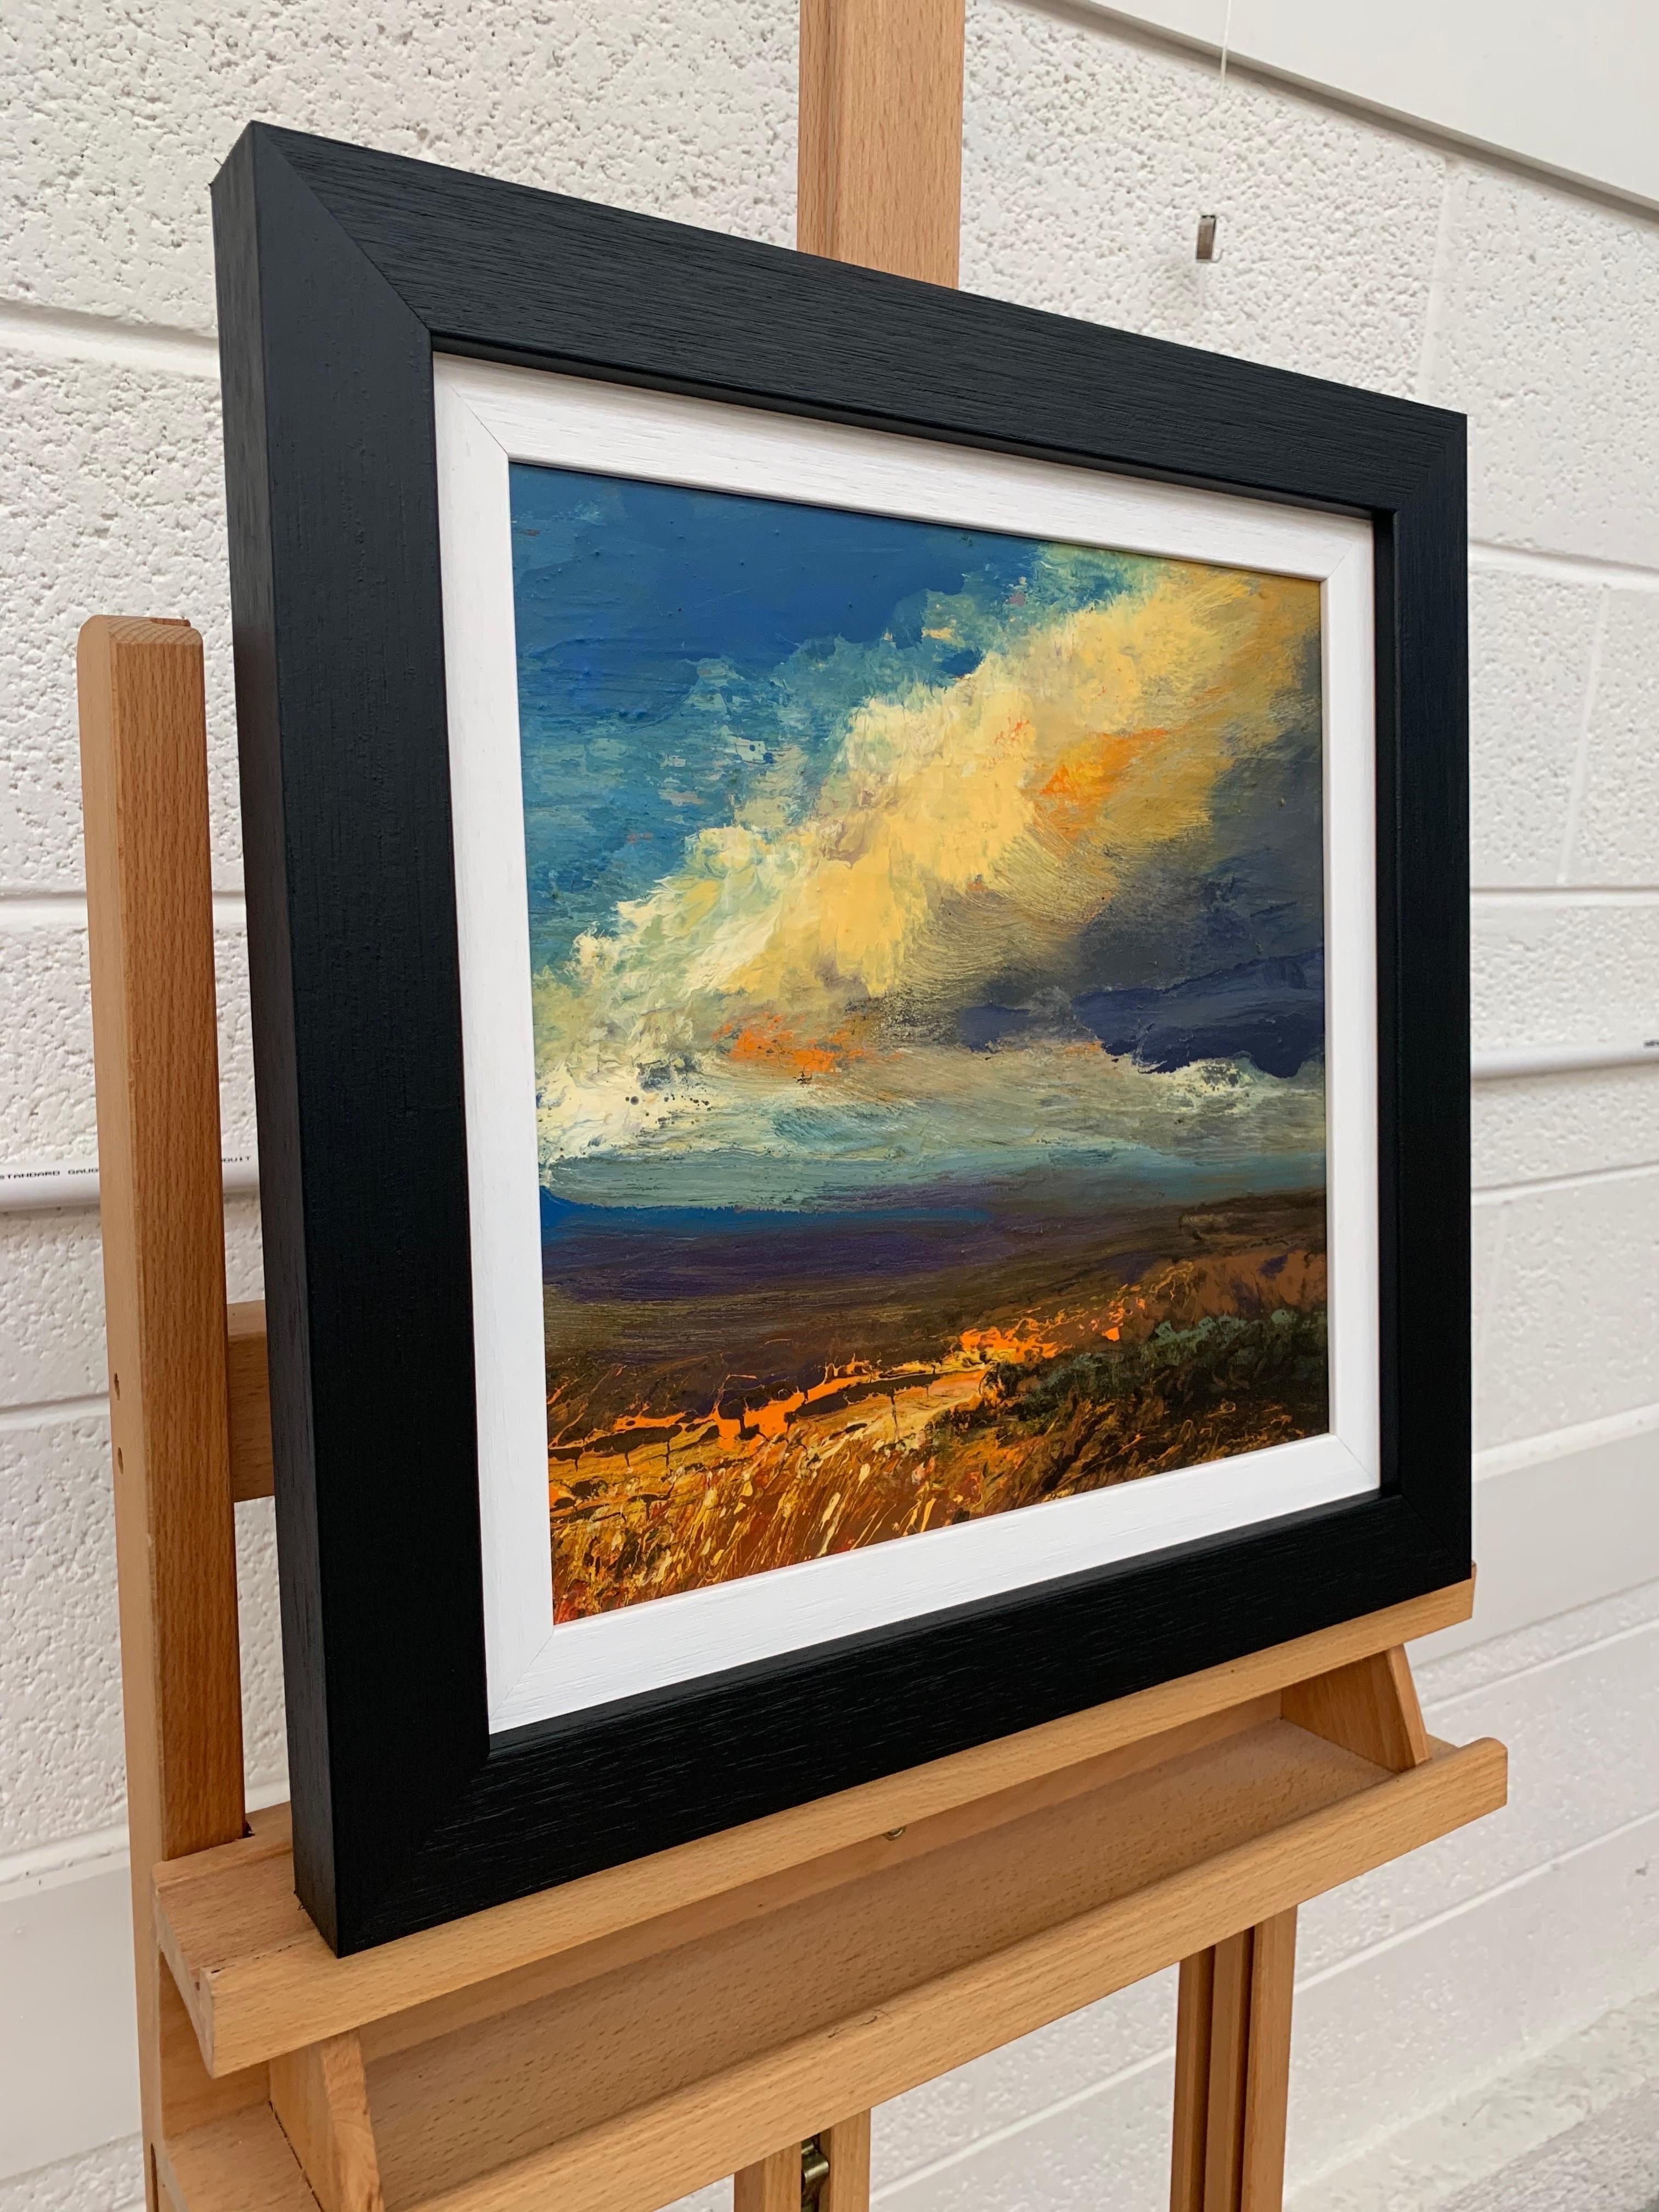 Impasto-Ölgemälde einer englischen Moorlandschaft von Colin Halliday, einem britischen Landschaftsmaler. Dieses Gemälde bringt die Intensität der Wolken in Nordengland und die ästhetische Schönheit des dramatischen Wetters zum Ausdruck, das über die